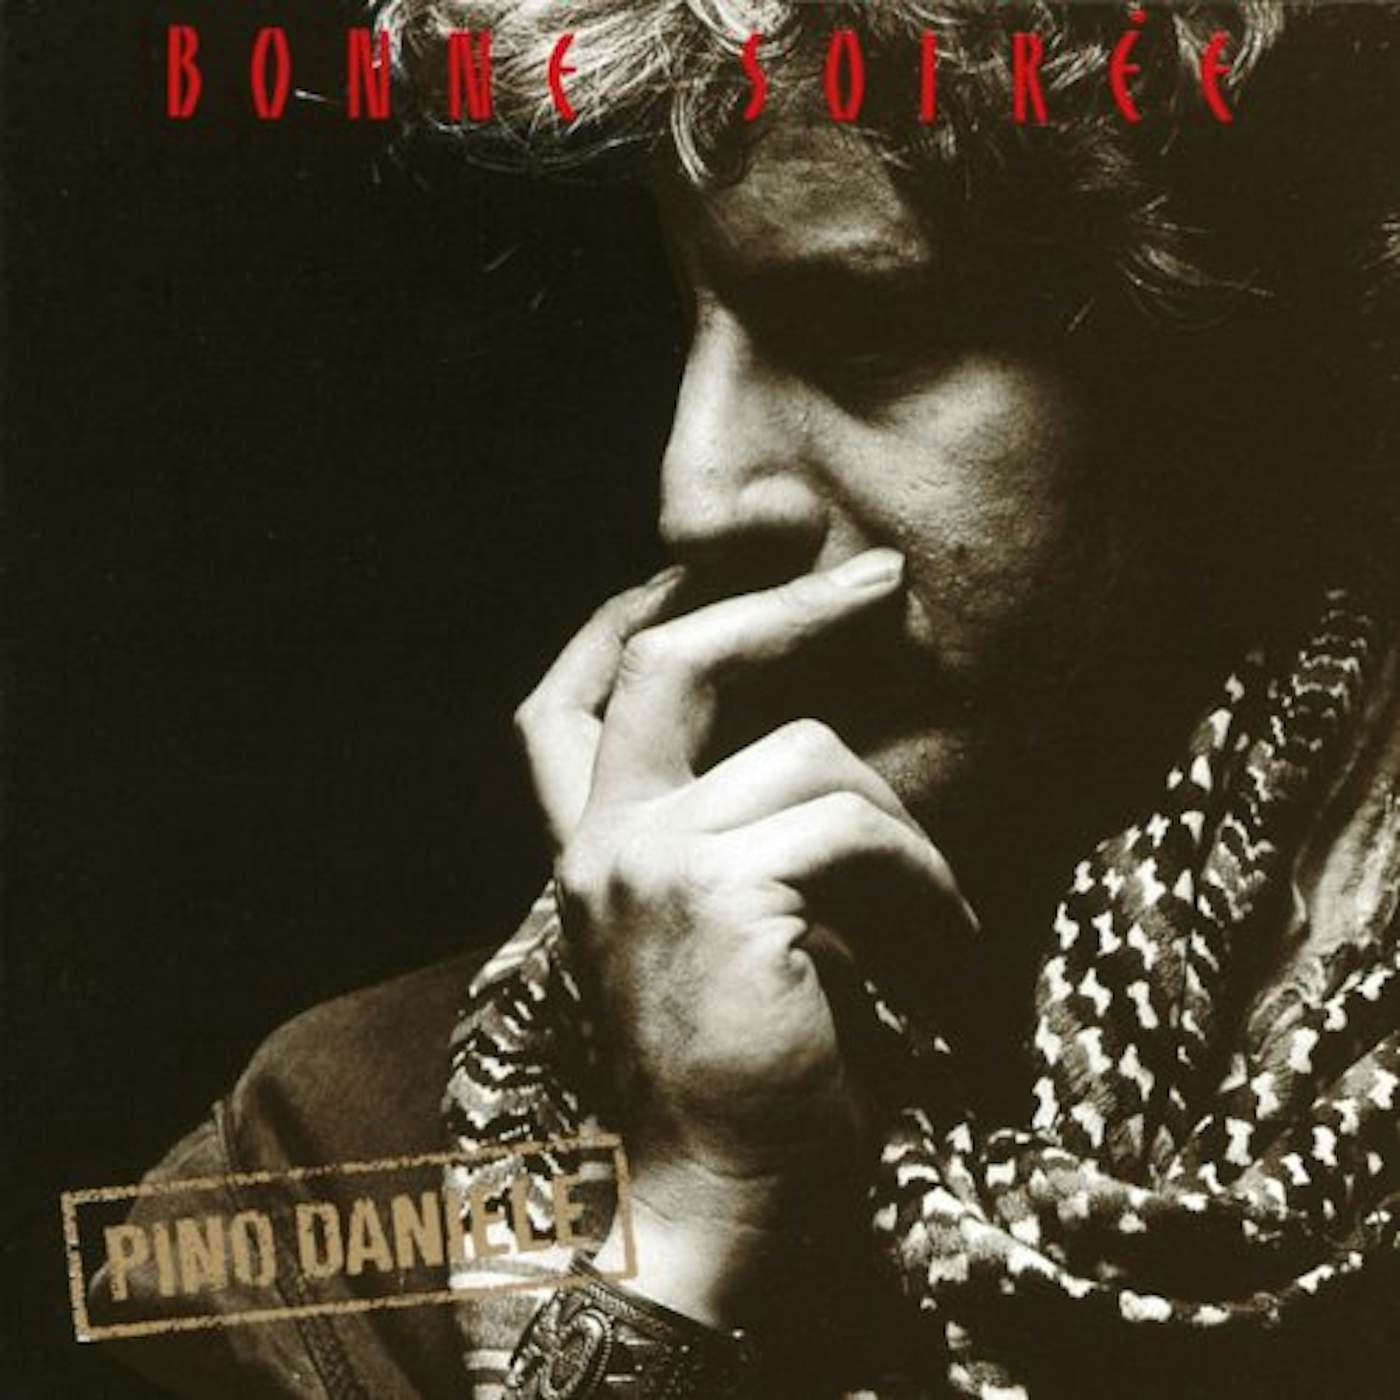 Pino Daniele BONNE SOIREE Vinyl Record